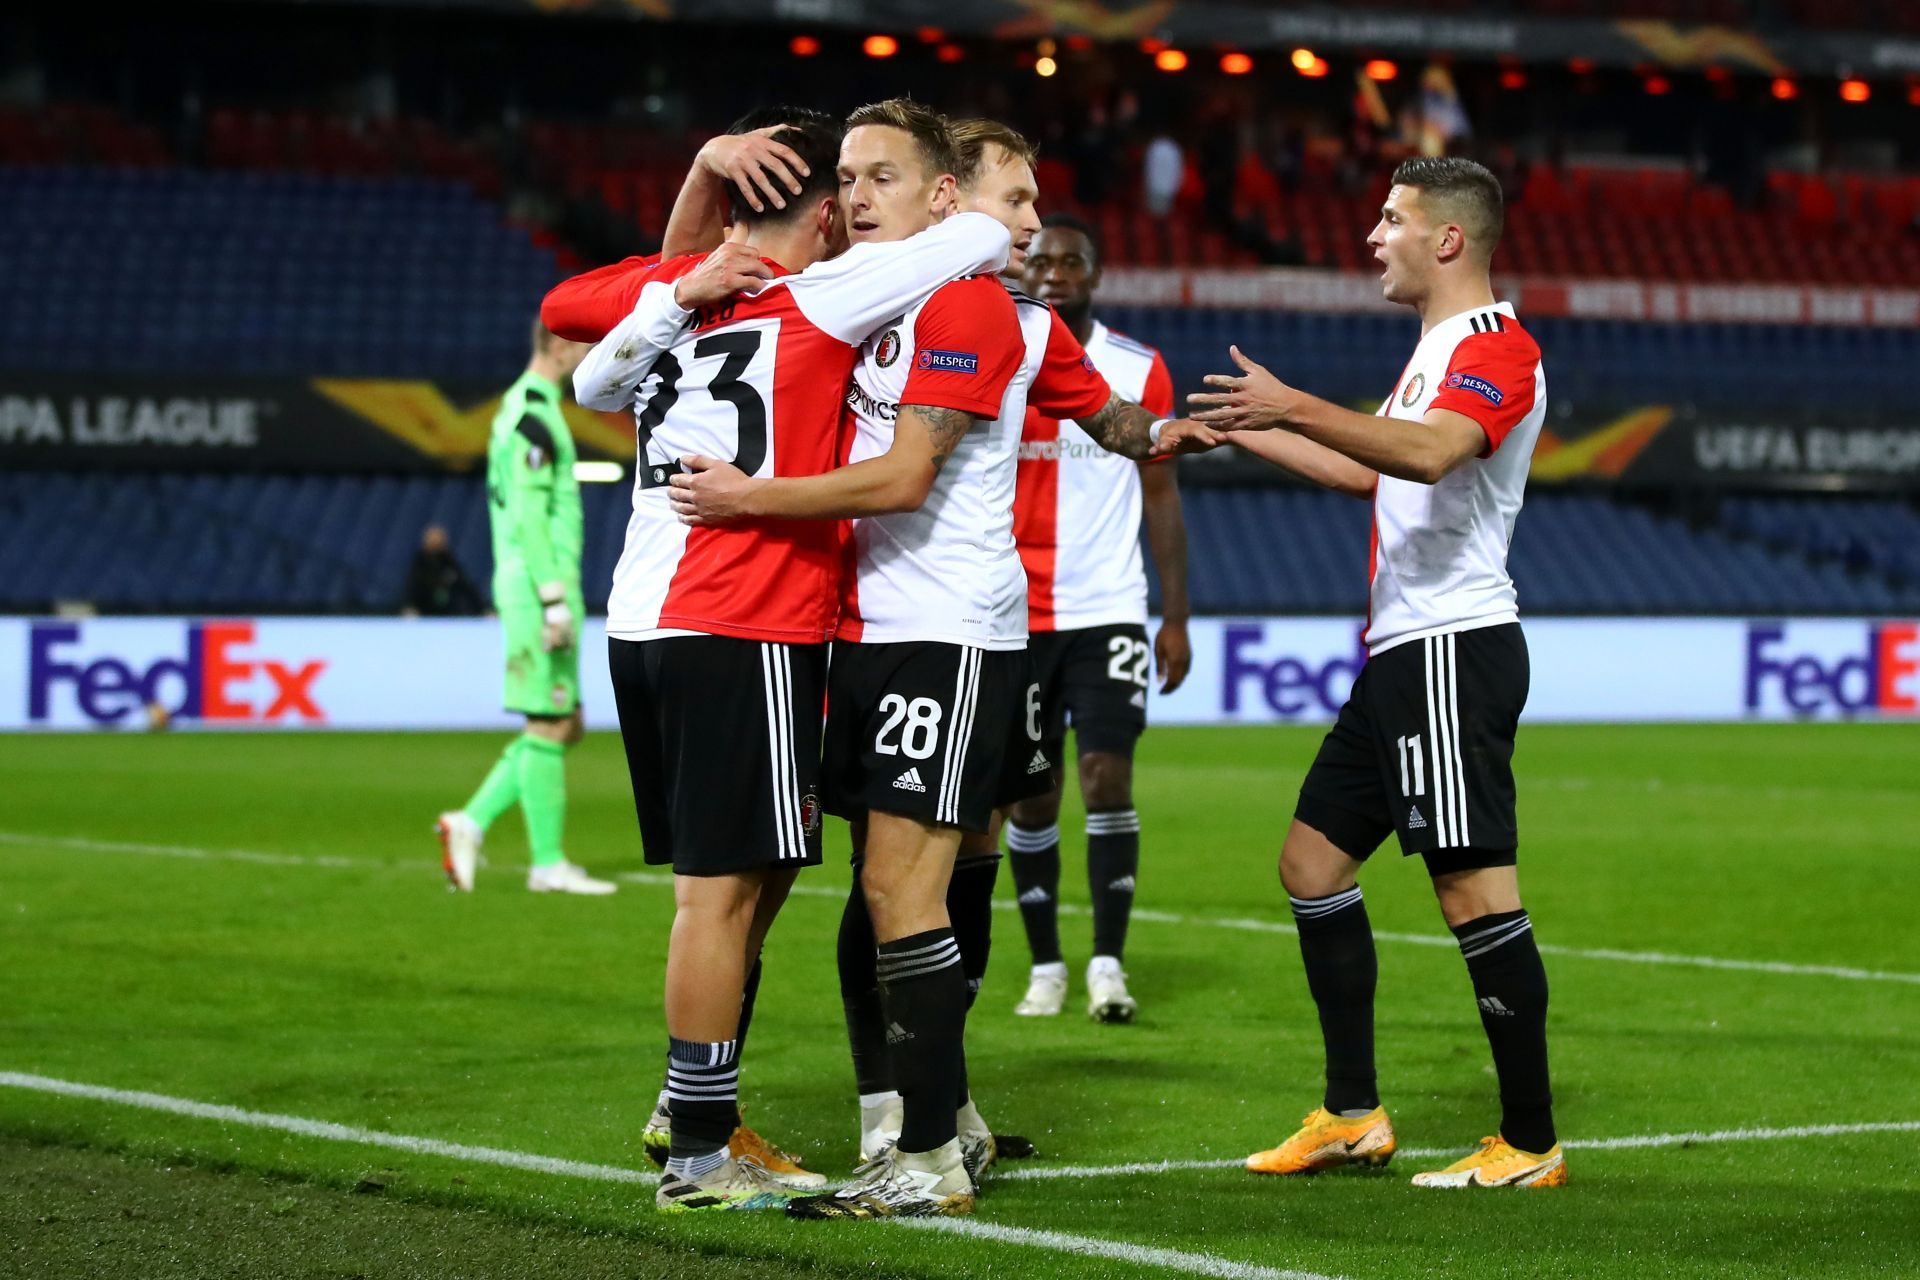 Feyenoord will host Sparta Rotterdam on Sunday